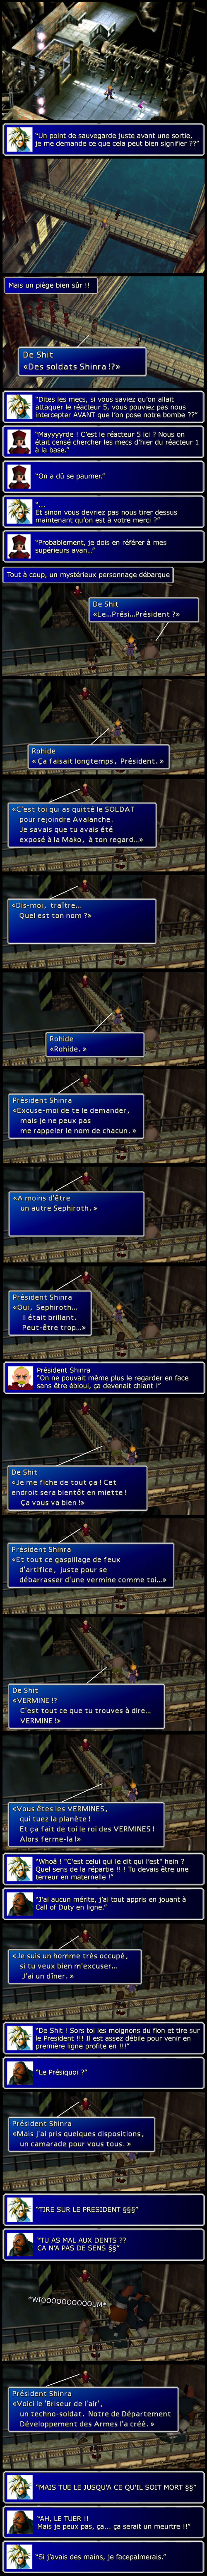 Final fantasy 7 : Pris au piège par les soldats de la Shinra et le président de la Shinra qui vient faire coucou (et se mettre en danger inutilement comme un branque)